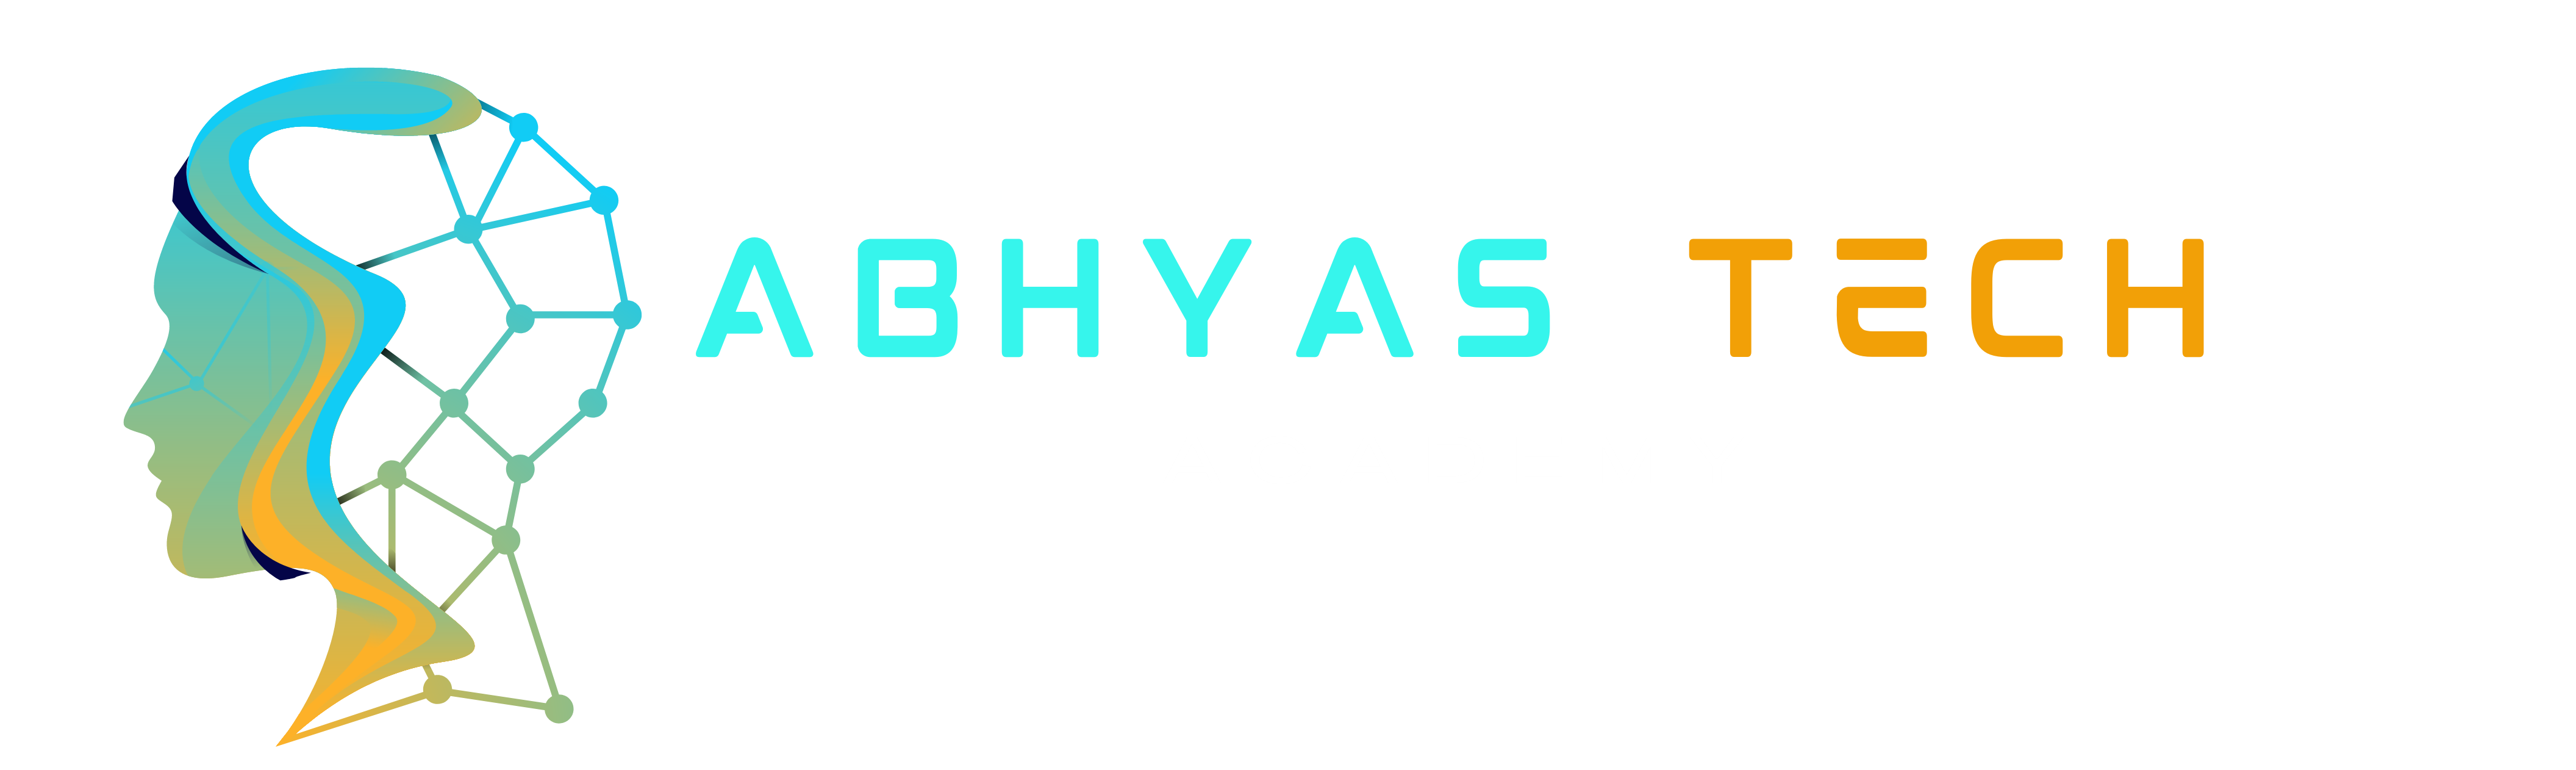 Abhyas Tech Academy